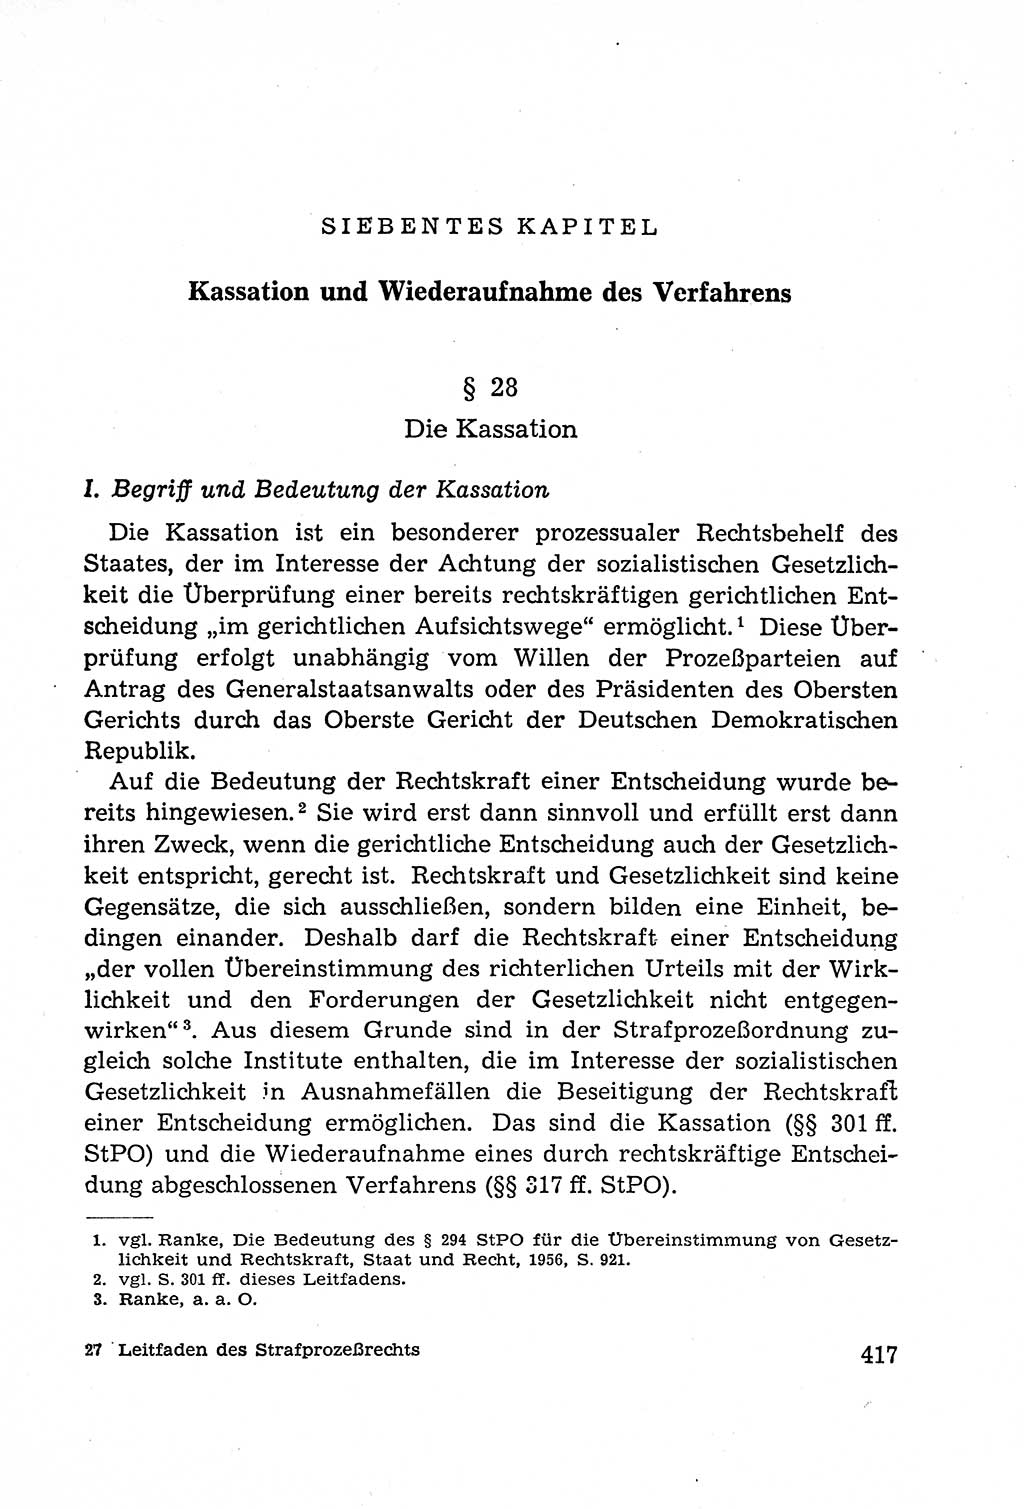 Leitfaden des Strafprozeßrechts der Deutschen Demokratischen Republik (DDR) 1959, Seite 417 (LF StPR DDR 1959, S. 417)